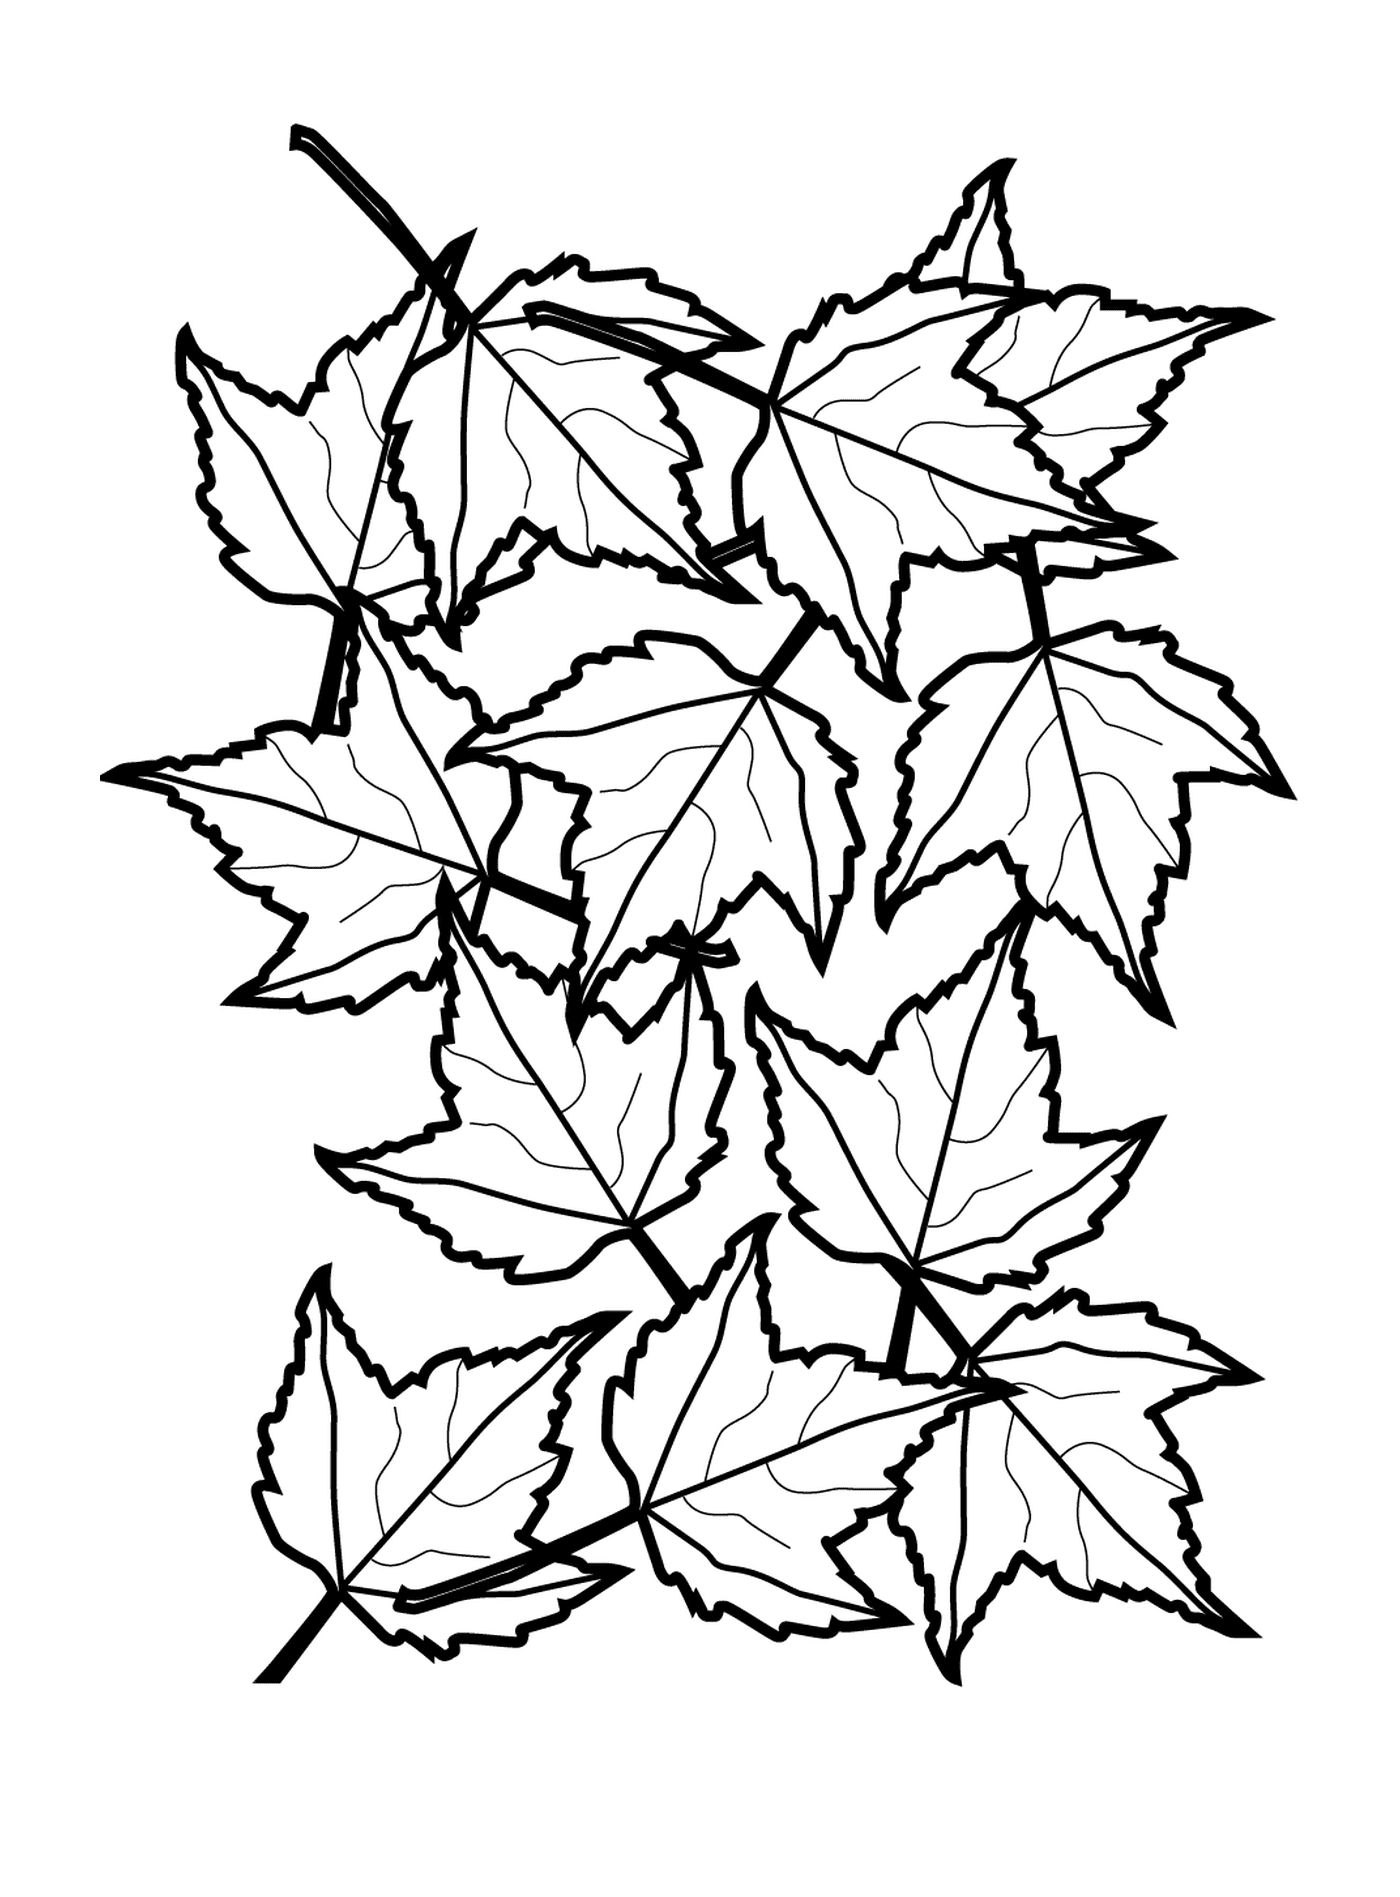  Una línea de hojas cayendo 